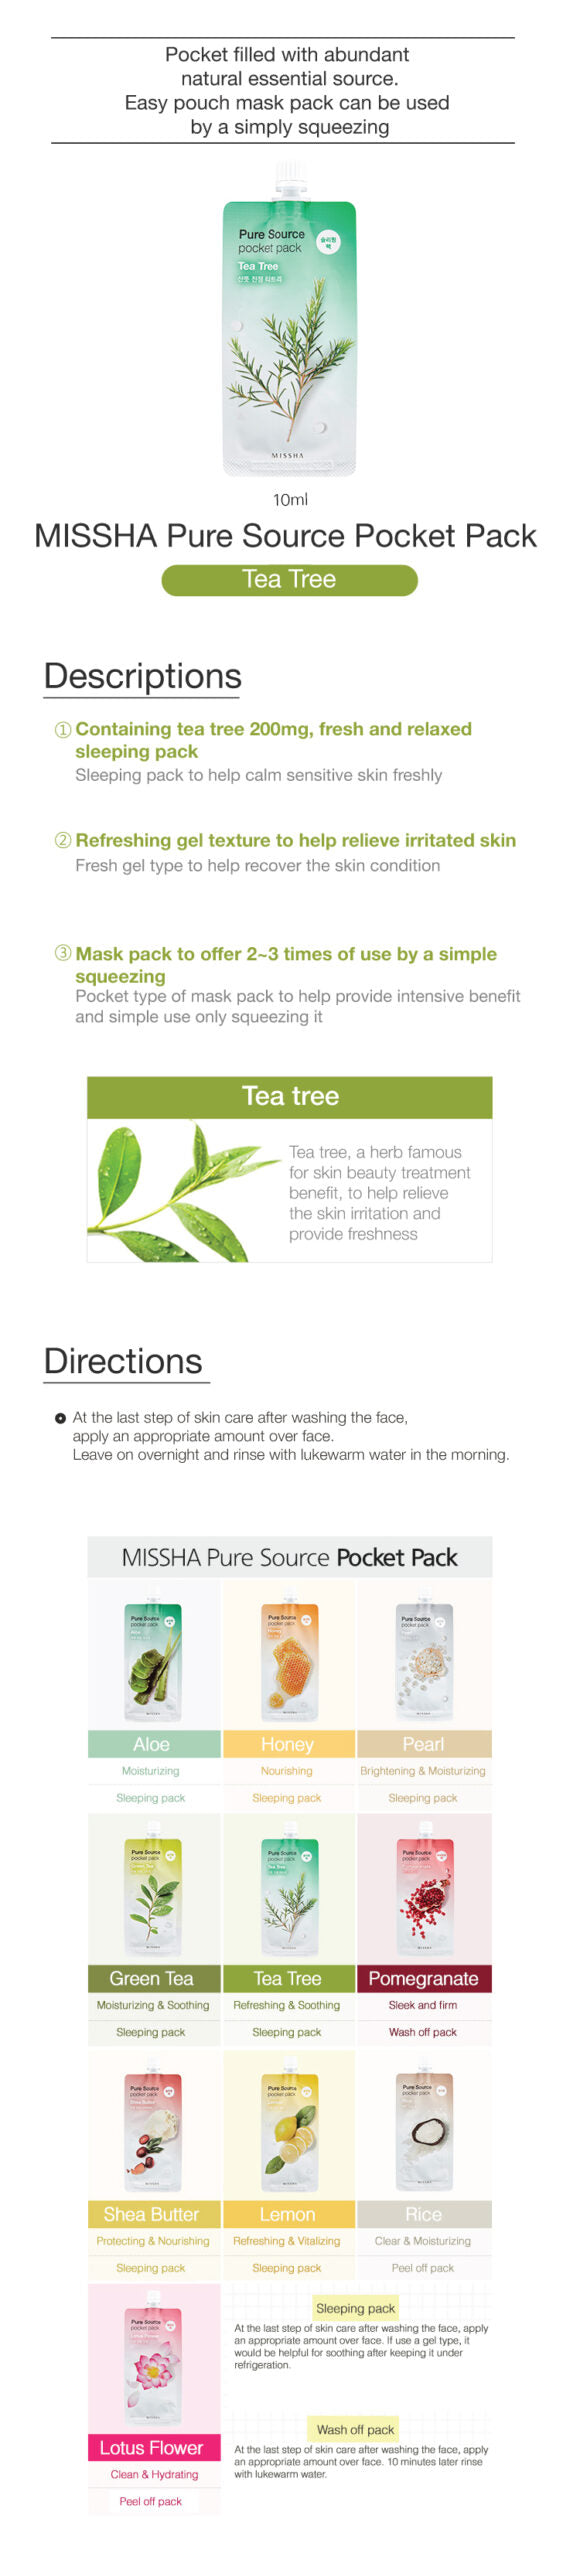 MISSHA Pure Source Pocket Pack Tea Tree 10ml-1